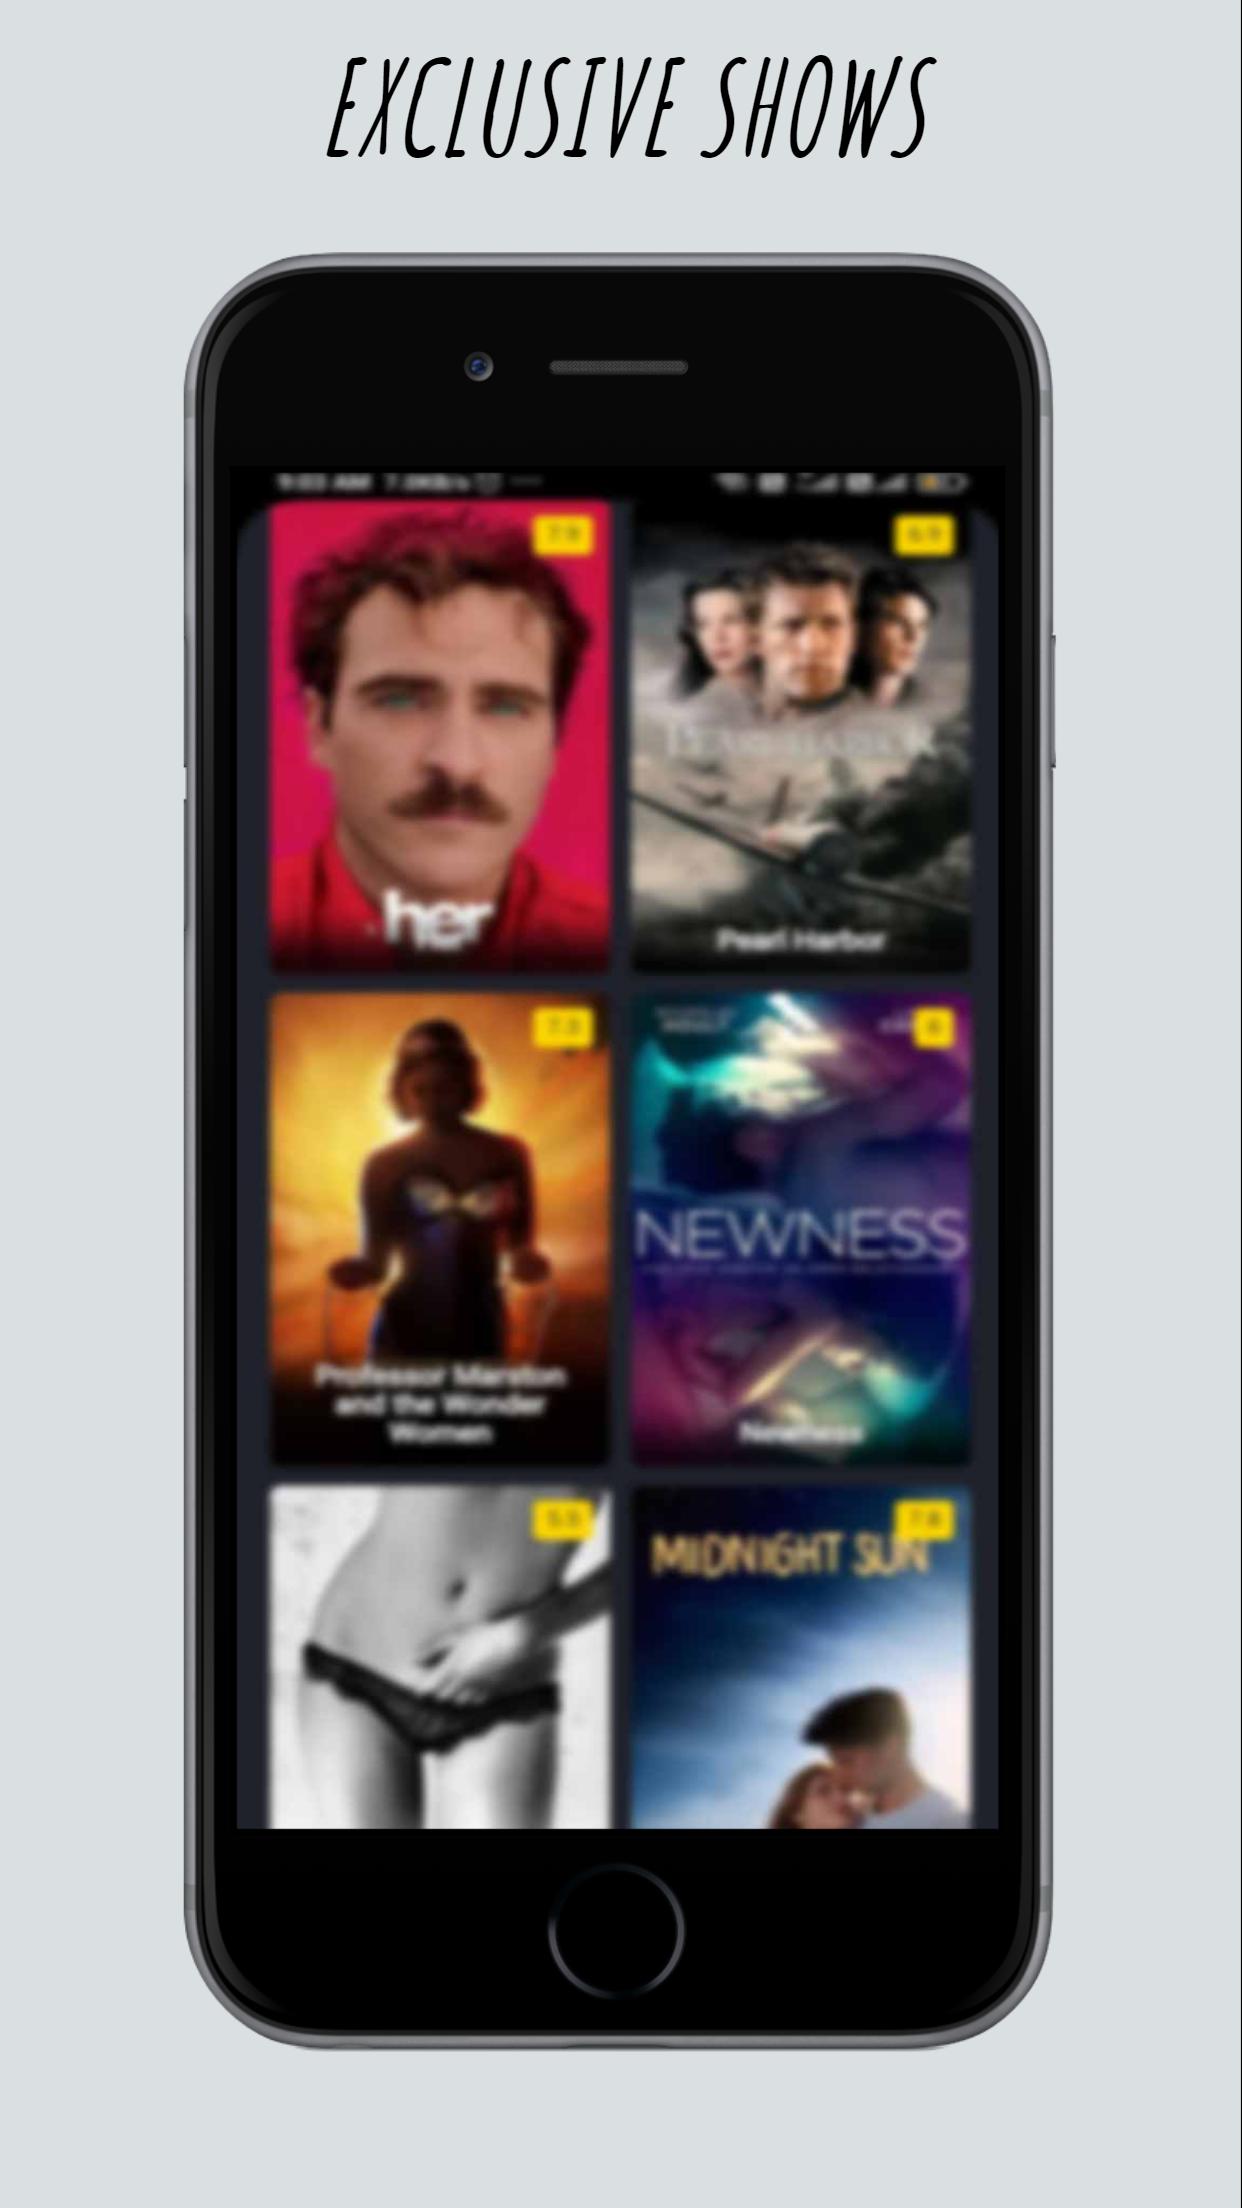 Moviebox pro free movies